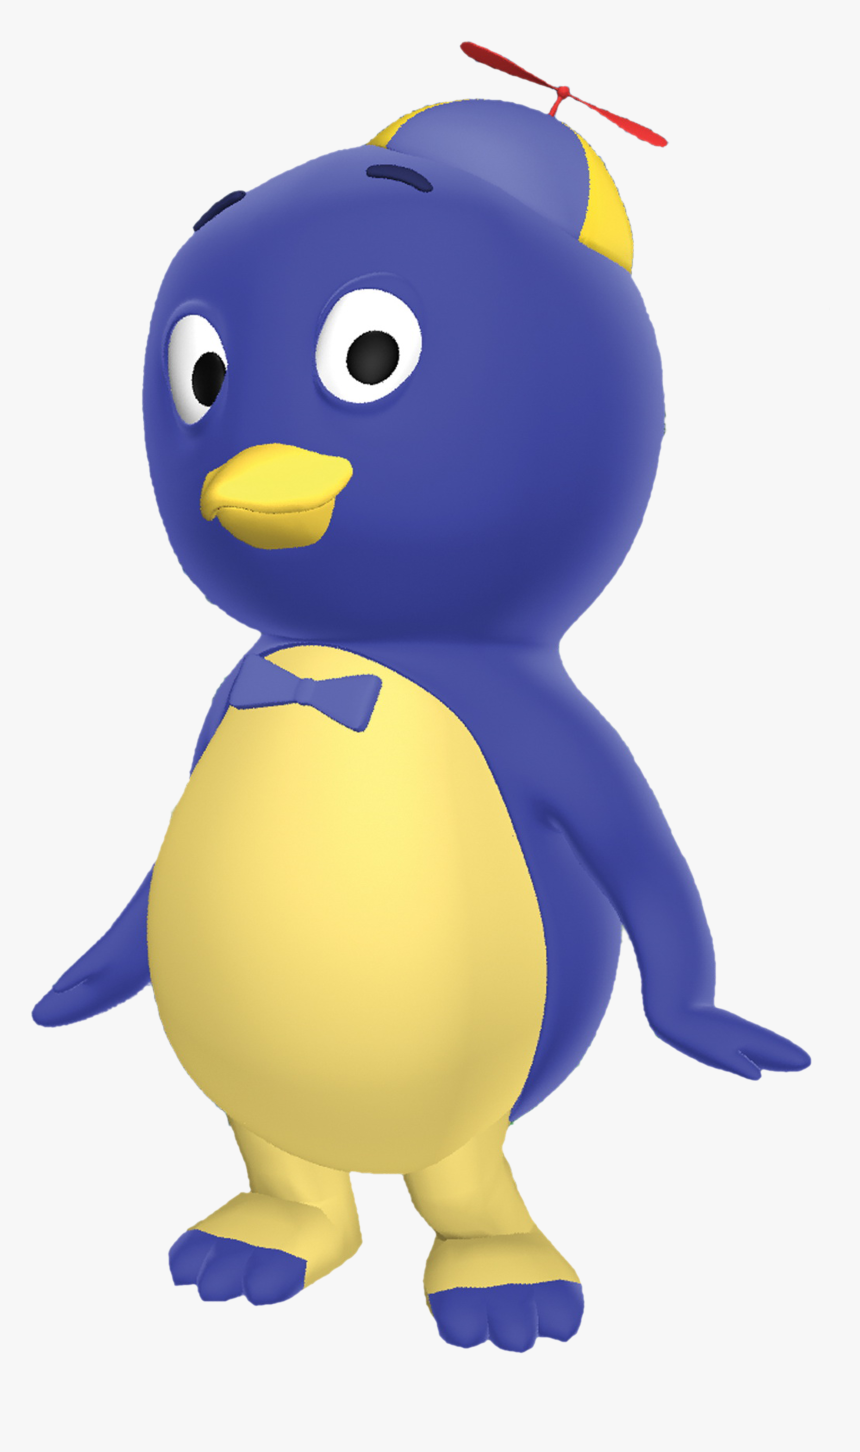 Penguin Png Pablo - Blue Penguin Cartoon Show, Transparent Png, Free Download